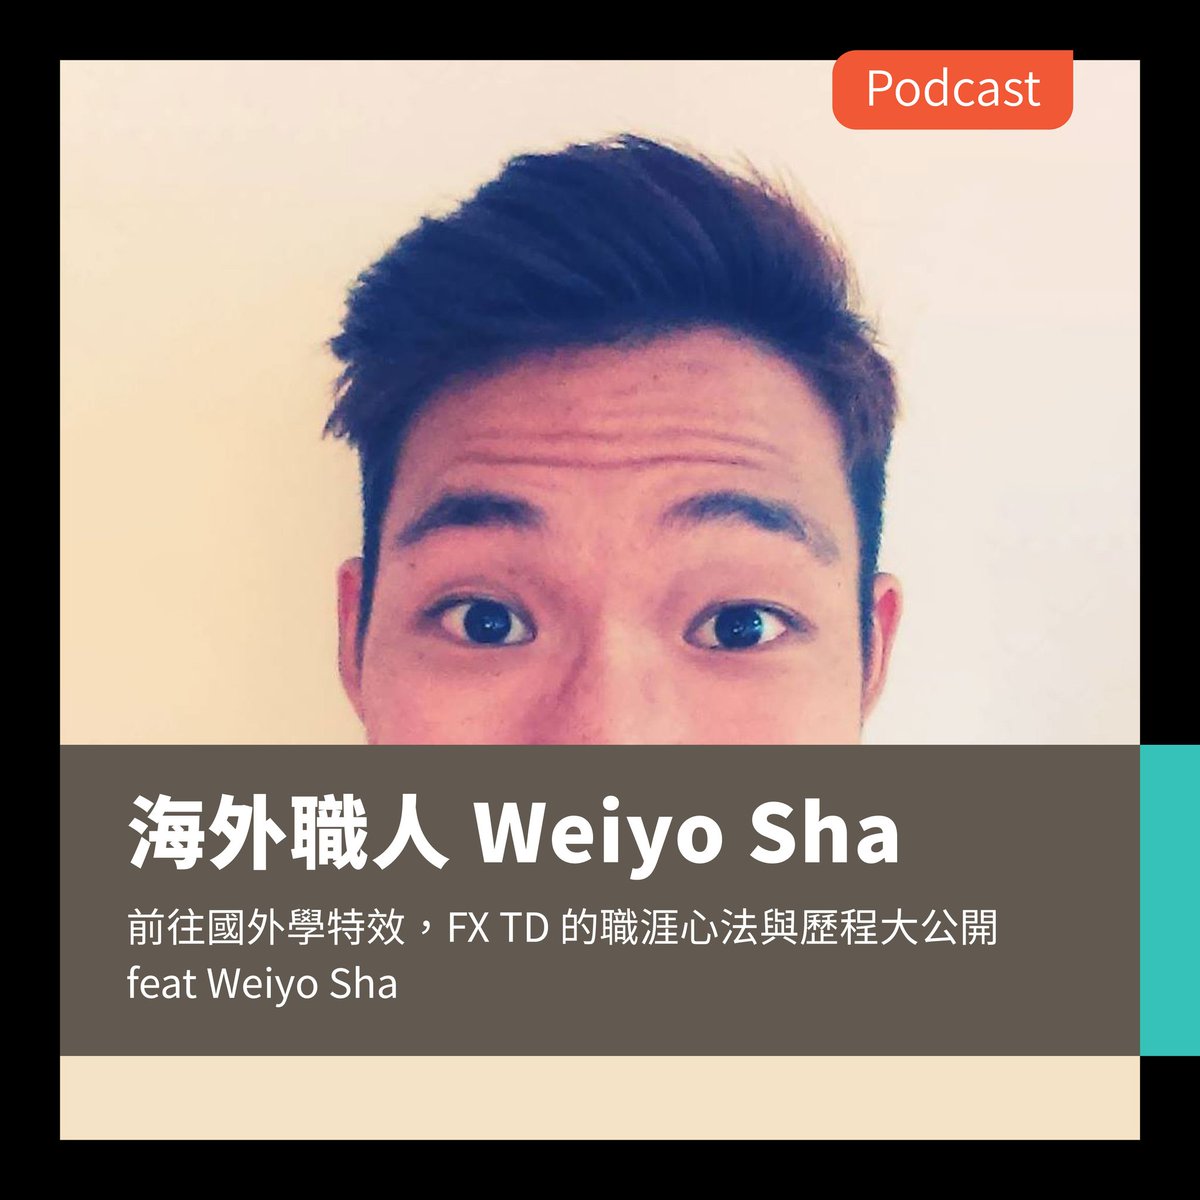 畢製老司機 #Podcast 上線：S02EP33
邀請外特效職人 @weiyo_sha 的工作歷程。究竟FX TD 要做甚麼事？又會面臨到甚麼挑戰呢？
【立即收聽】
Apple Podcast：lihi1.com/lCX3W
Spotify：lihi1.com/cvtBA
其他收聽管道下收